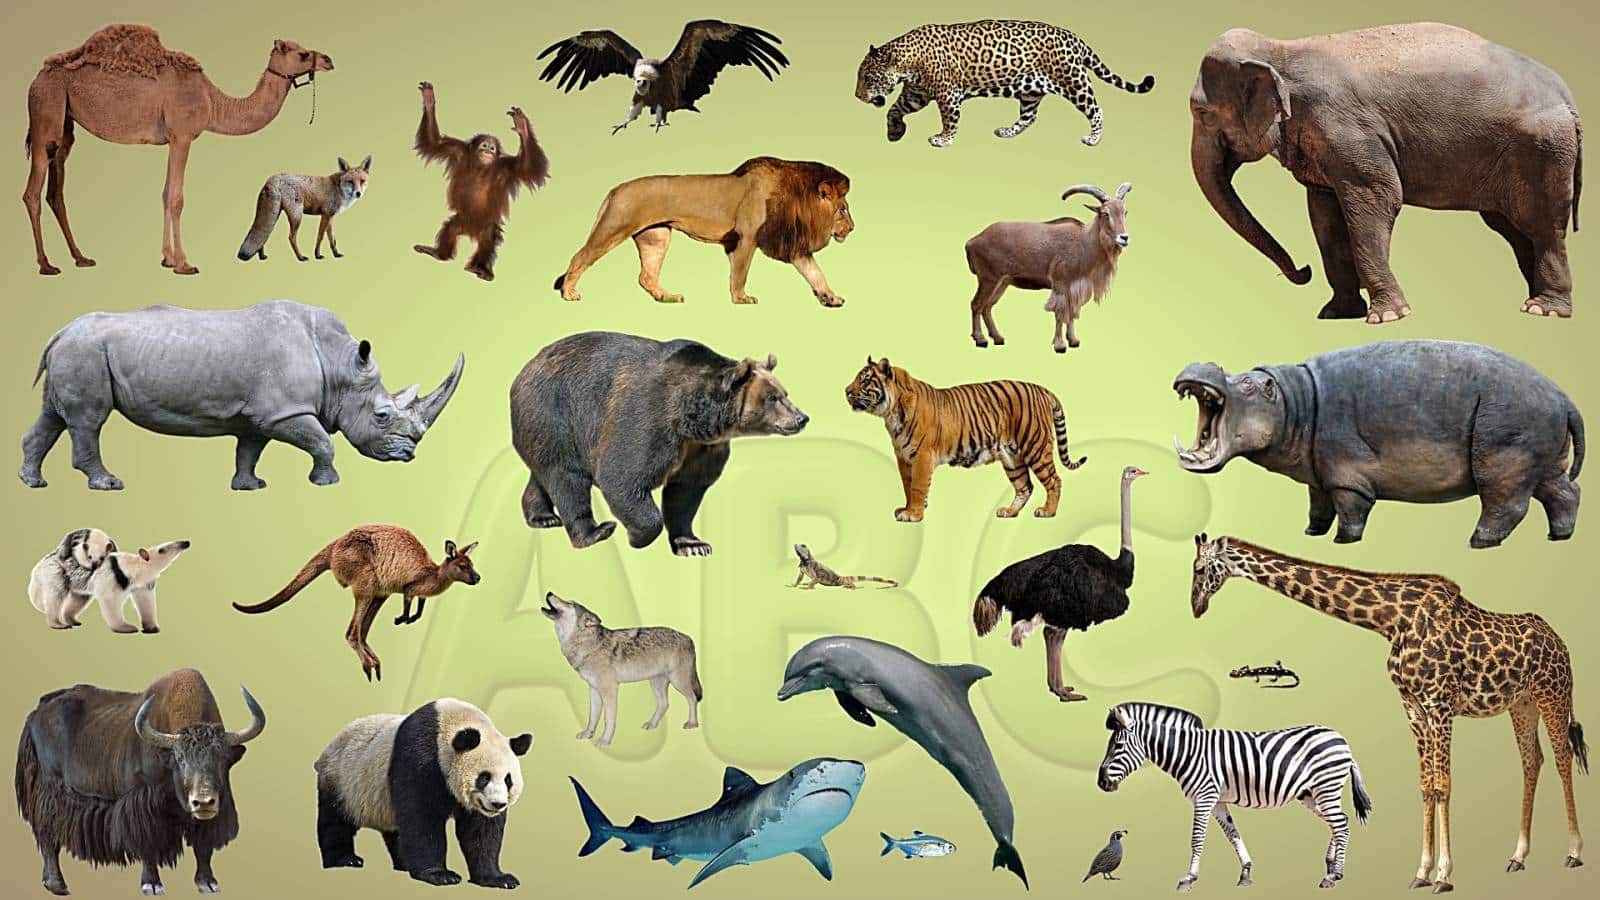 8300 Koleksi Gambar Binatang Peliharaan Dalam Bahasa Inggris Gratis Terbaru